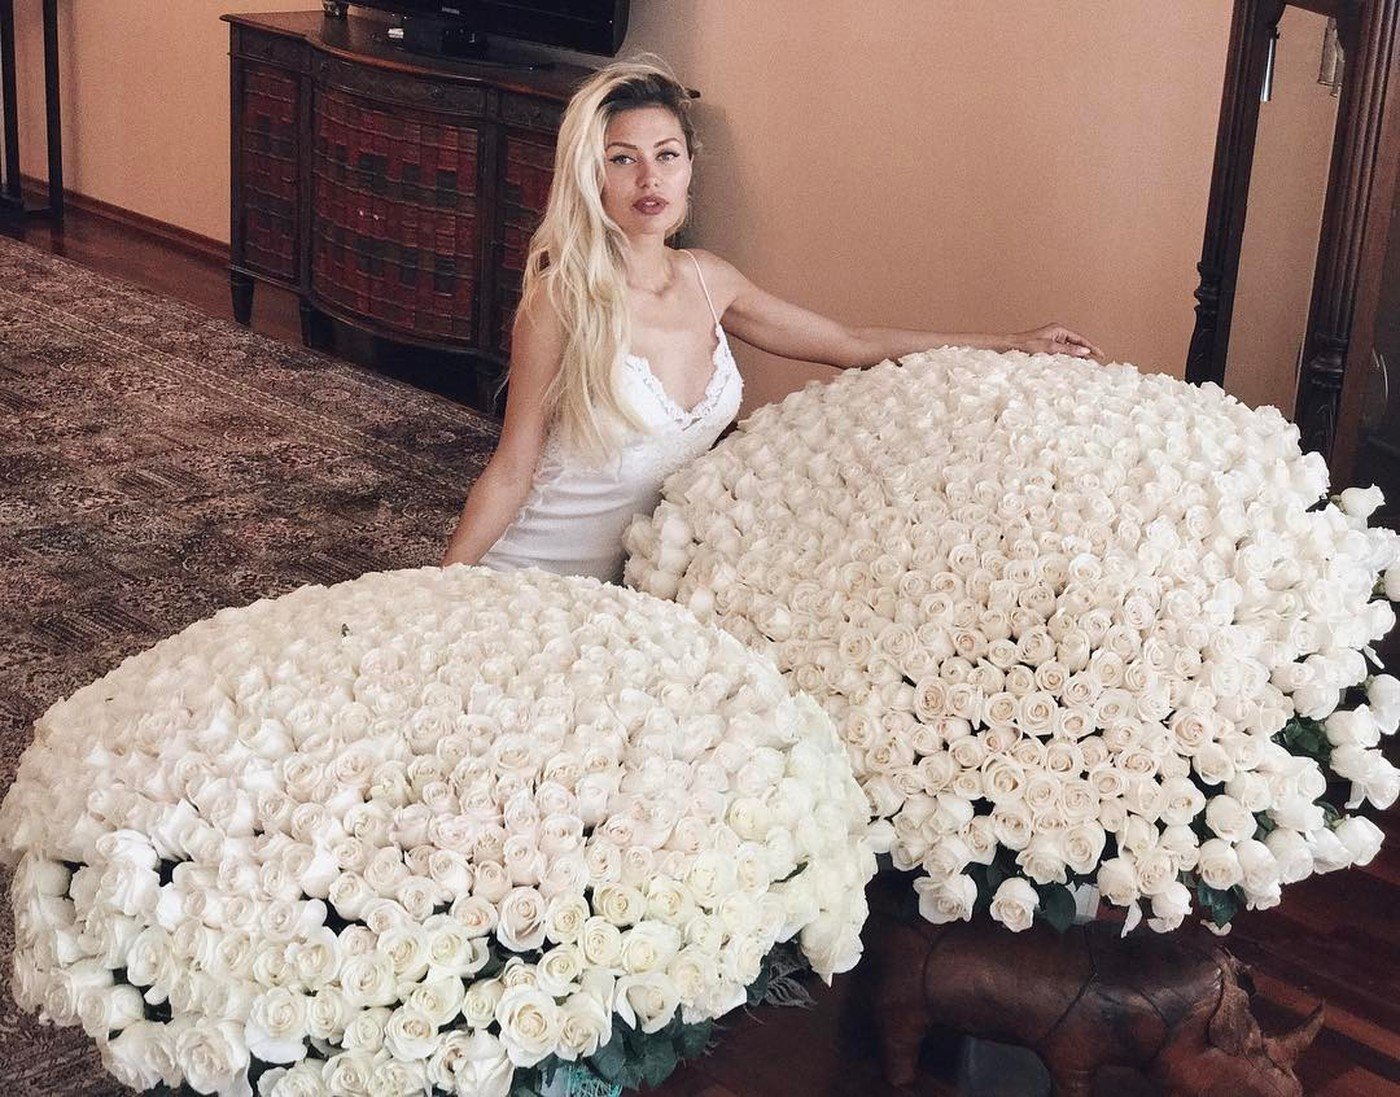 Instagram kvelikanov. Огромный букет. Девушка с огромным букетом. Девушка с большим букетом роз.